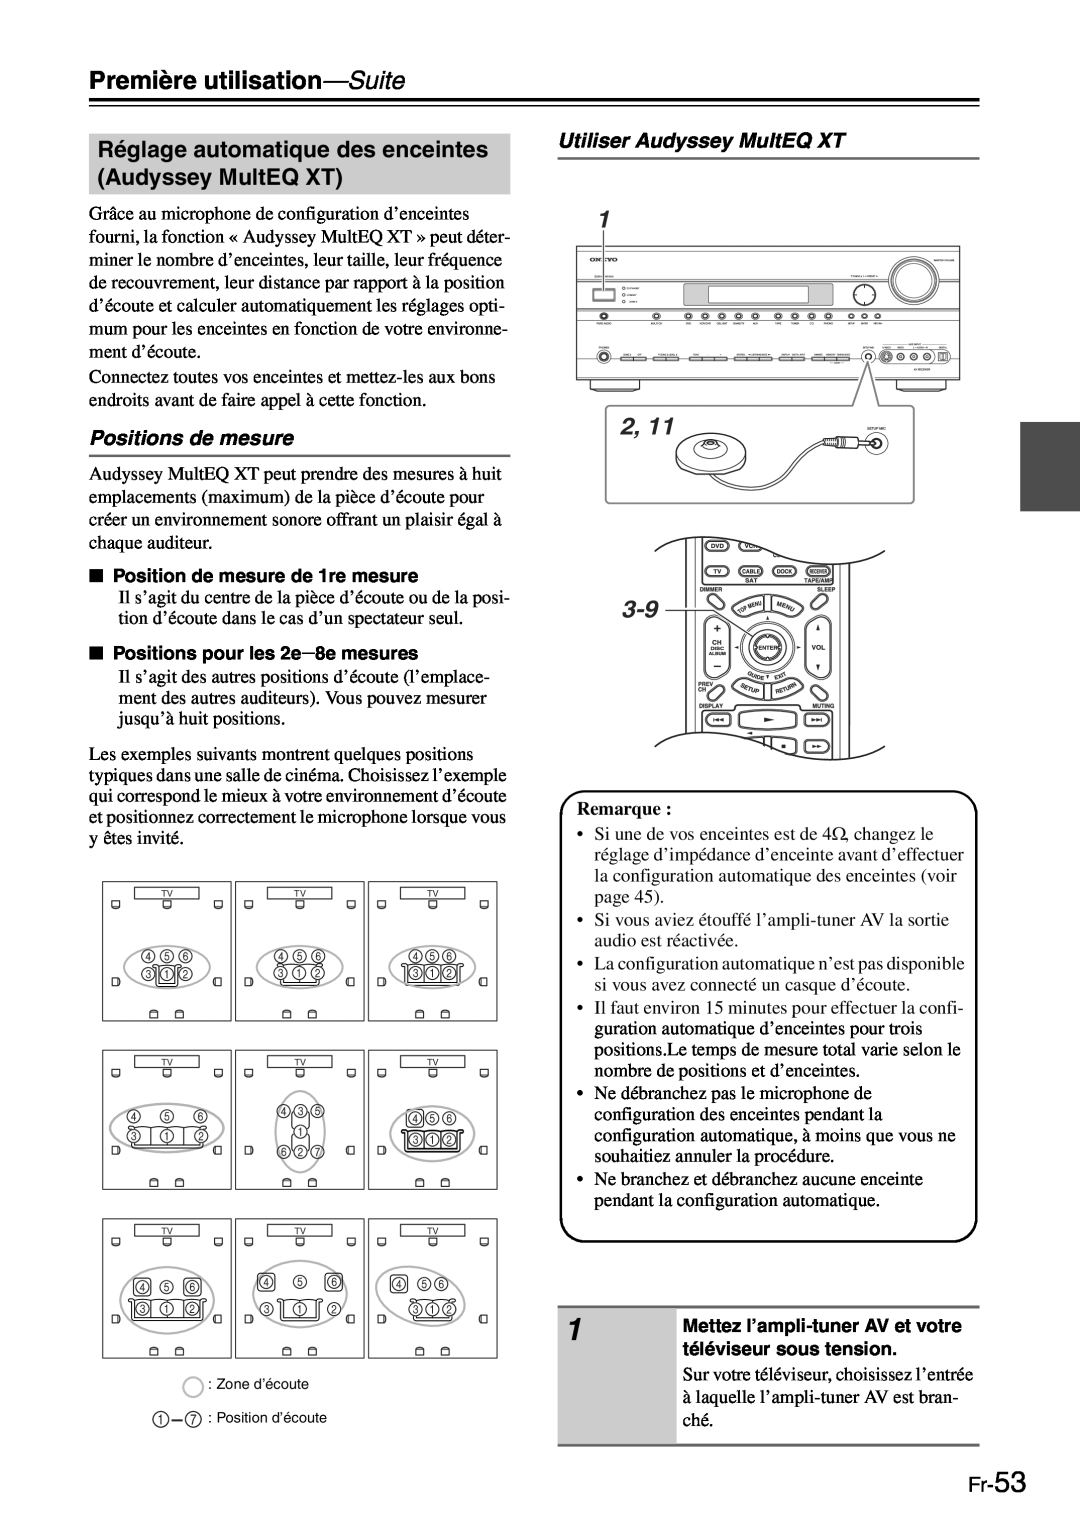 Onkyo TX-SR705 manual Positions de mesure, Utiliser Audyssey MultEQ XT, Fr-53, Première utilisation—Suite, Remarque 